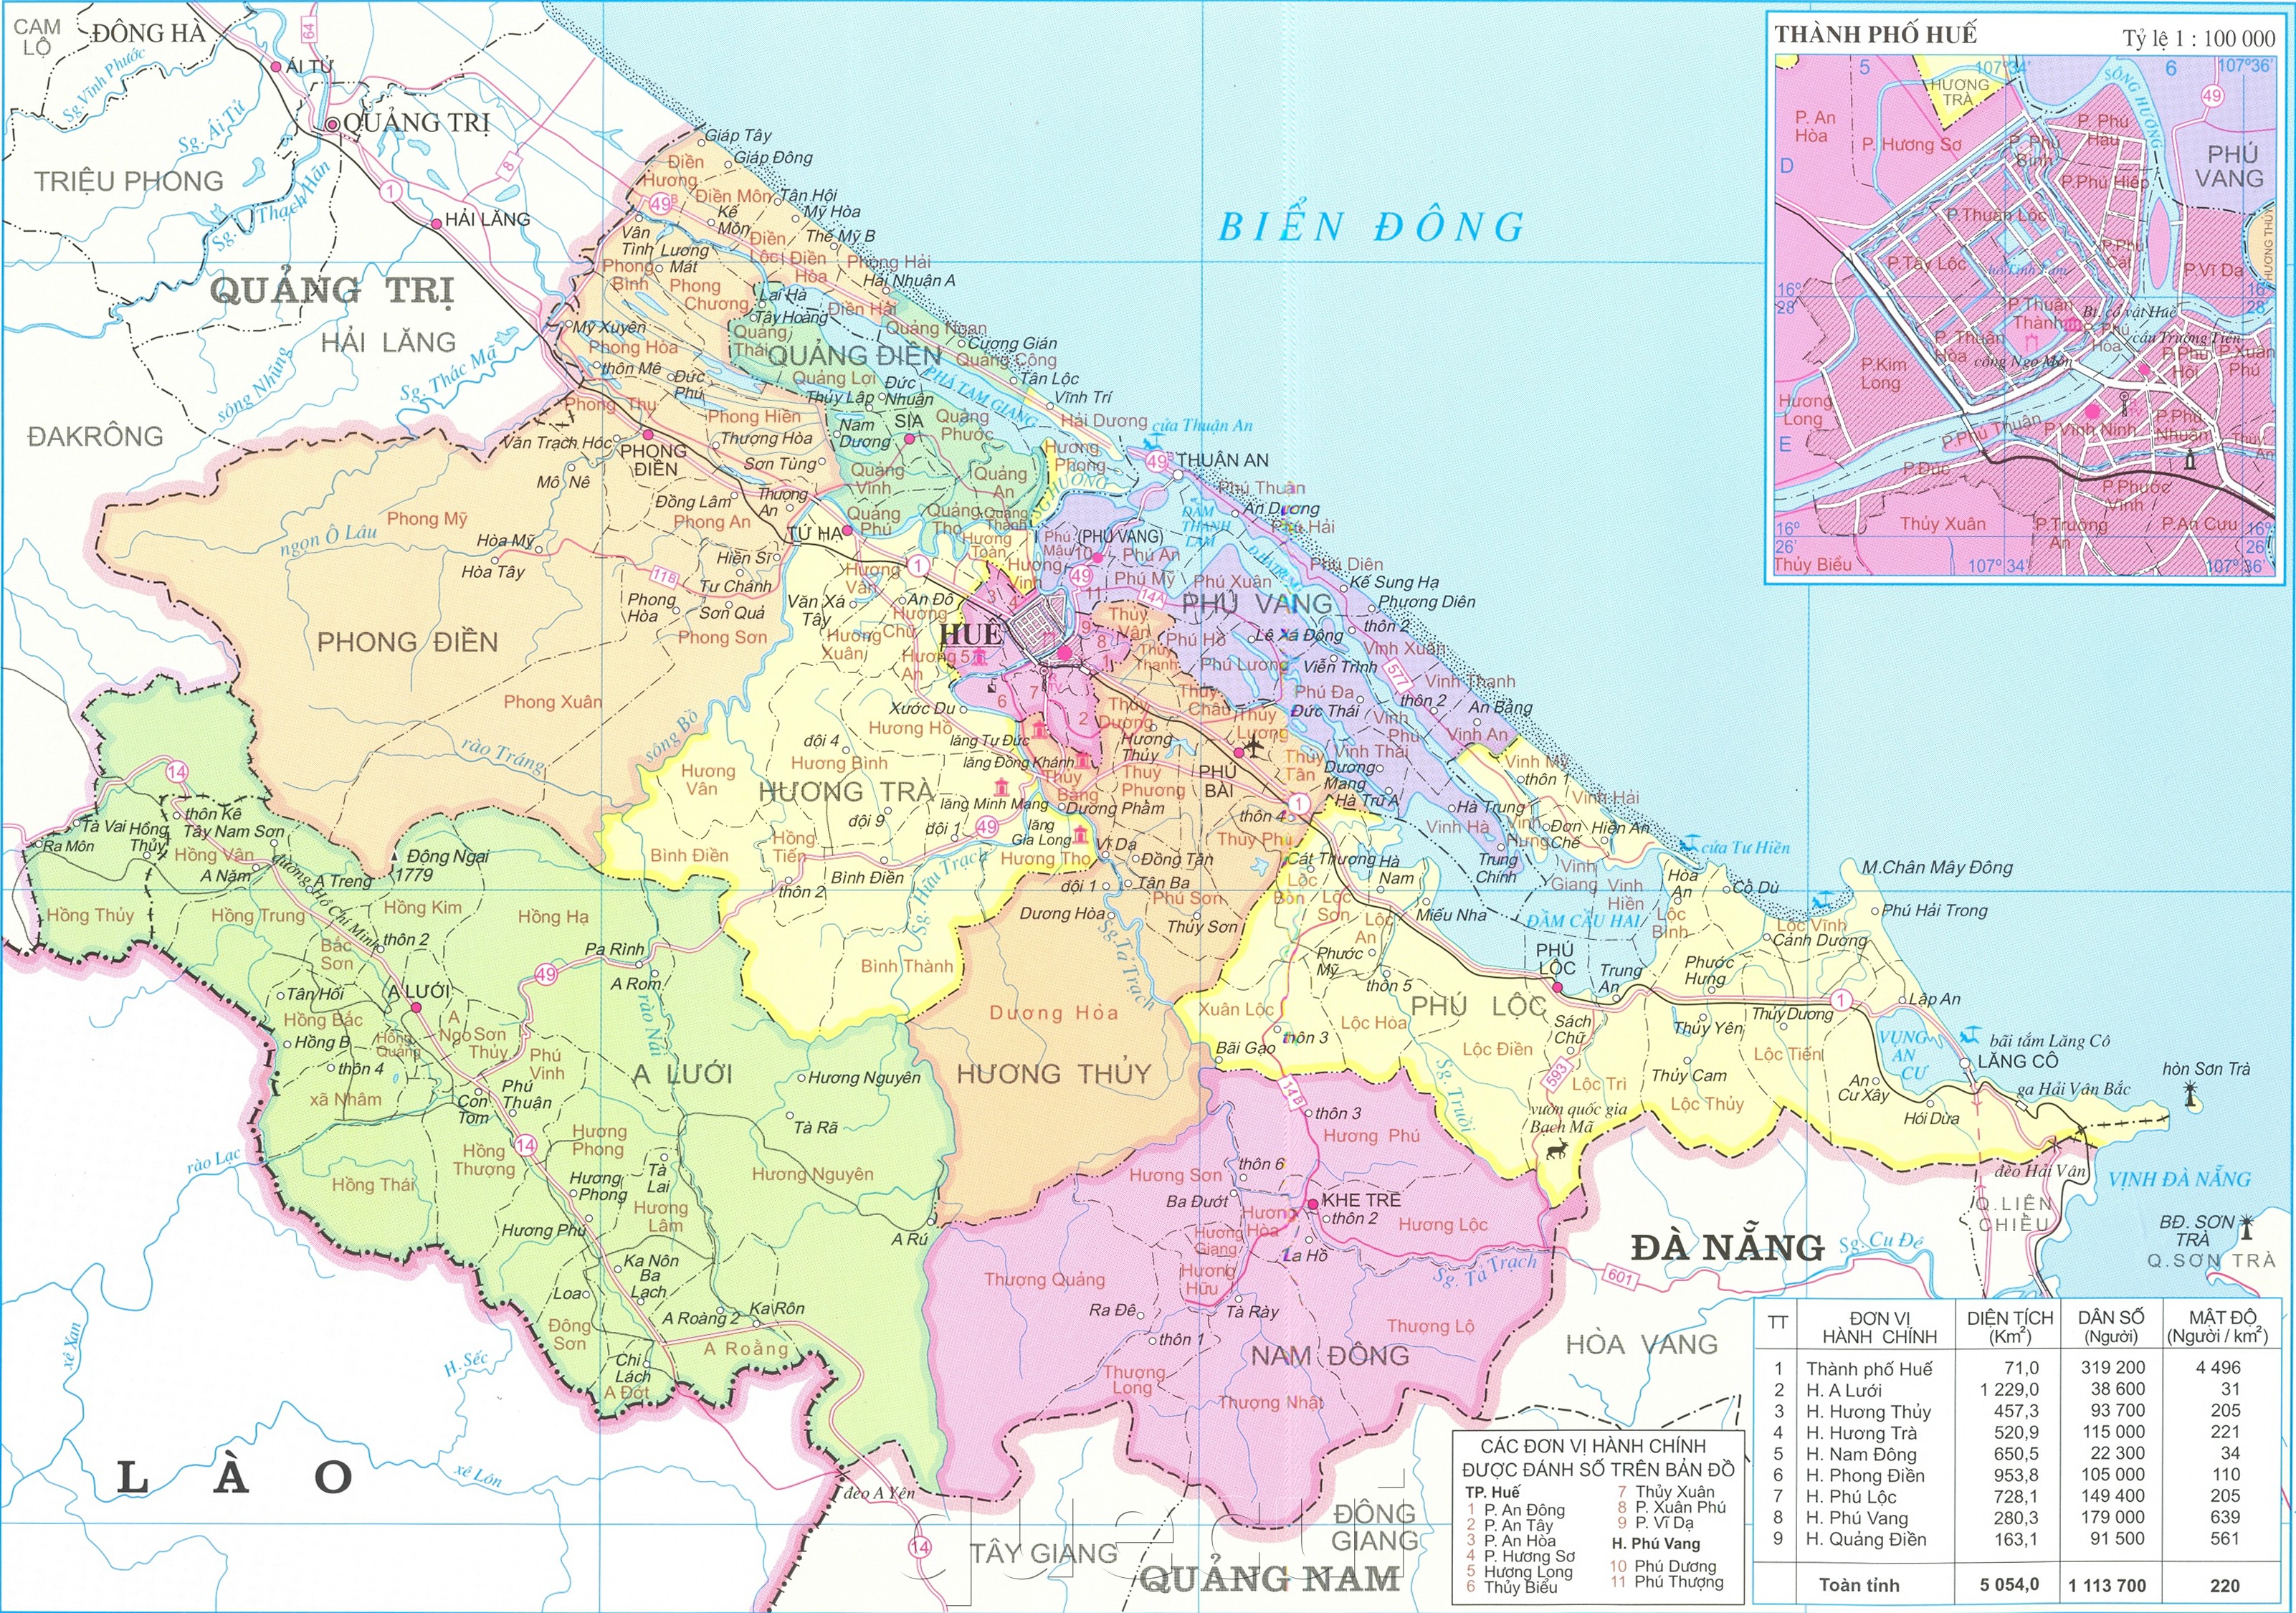 Cập nhật thông tin về các đơn vị hành chính tại Thừa Thiên - Huế với bản đồ hành chính tỉnh mới nhất